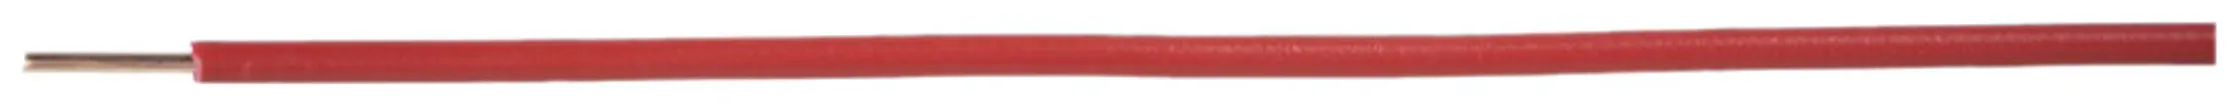 Filo N H07Z1-U senza alogeno 1.5mm² 450/750V rosso Cca 